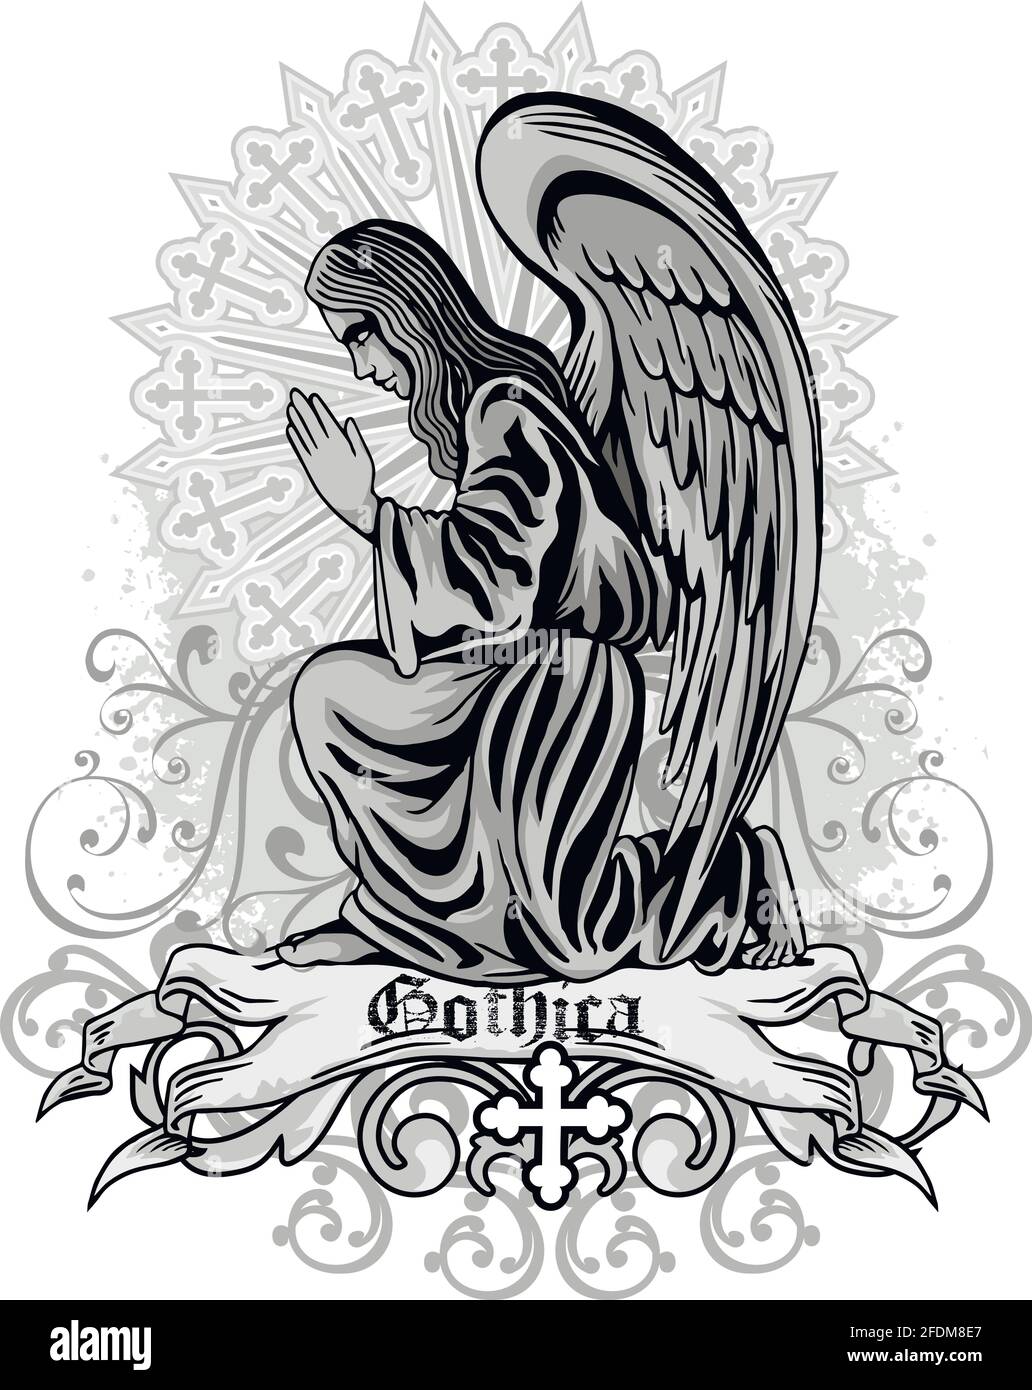 Segno gotico con angeli e cranio, grunge vintage design t camicie Illustrazione Vettoriale